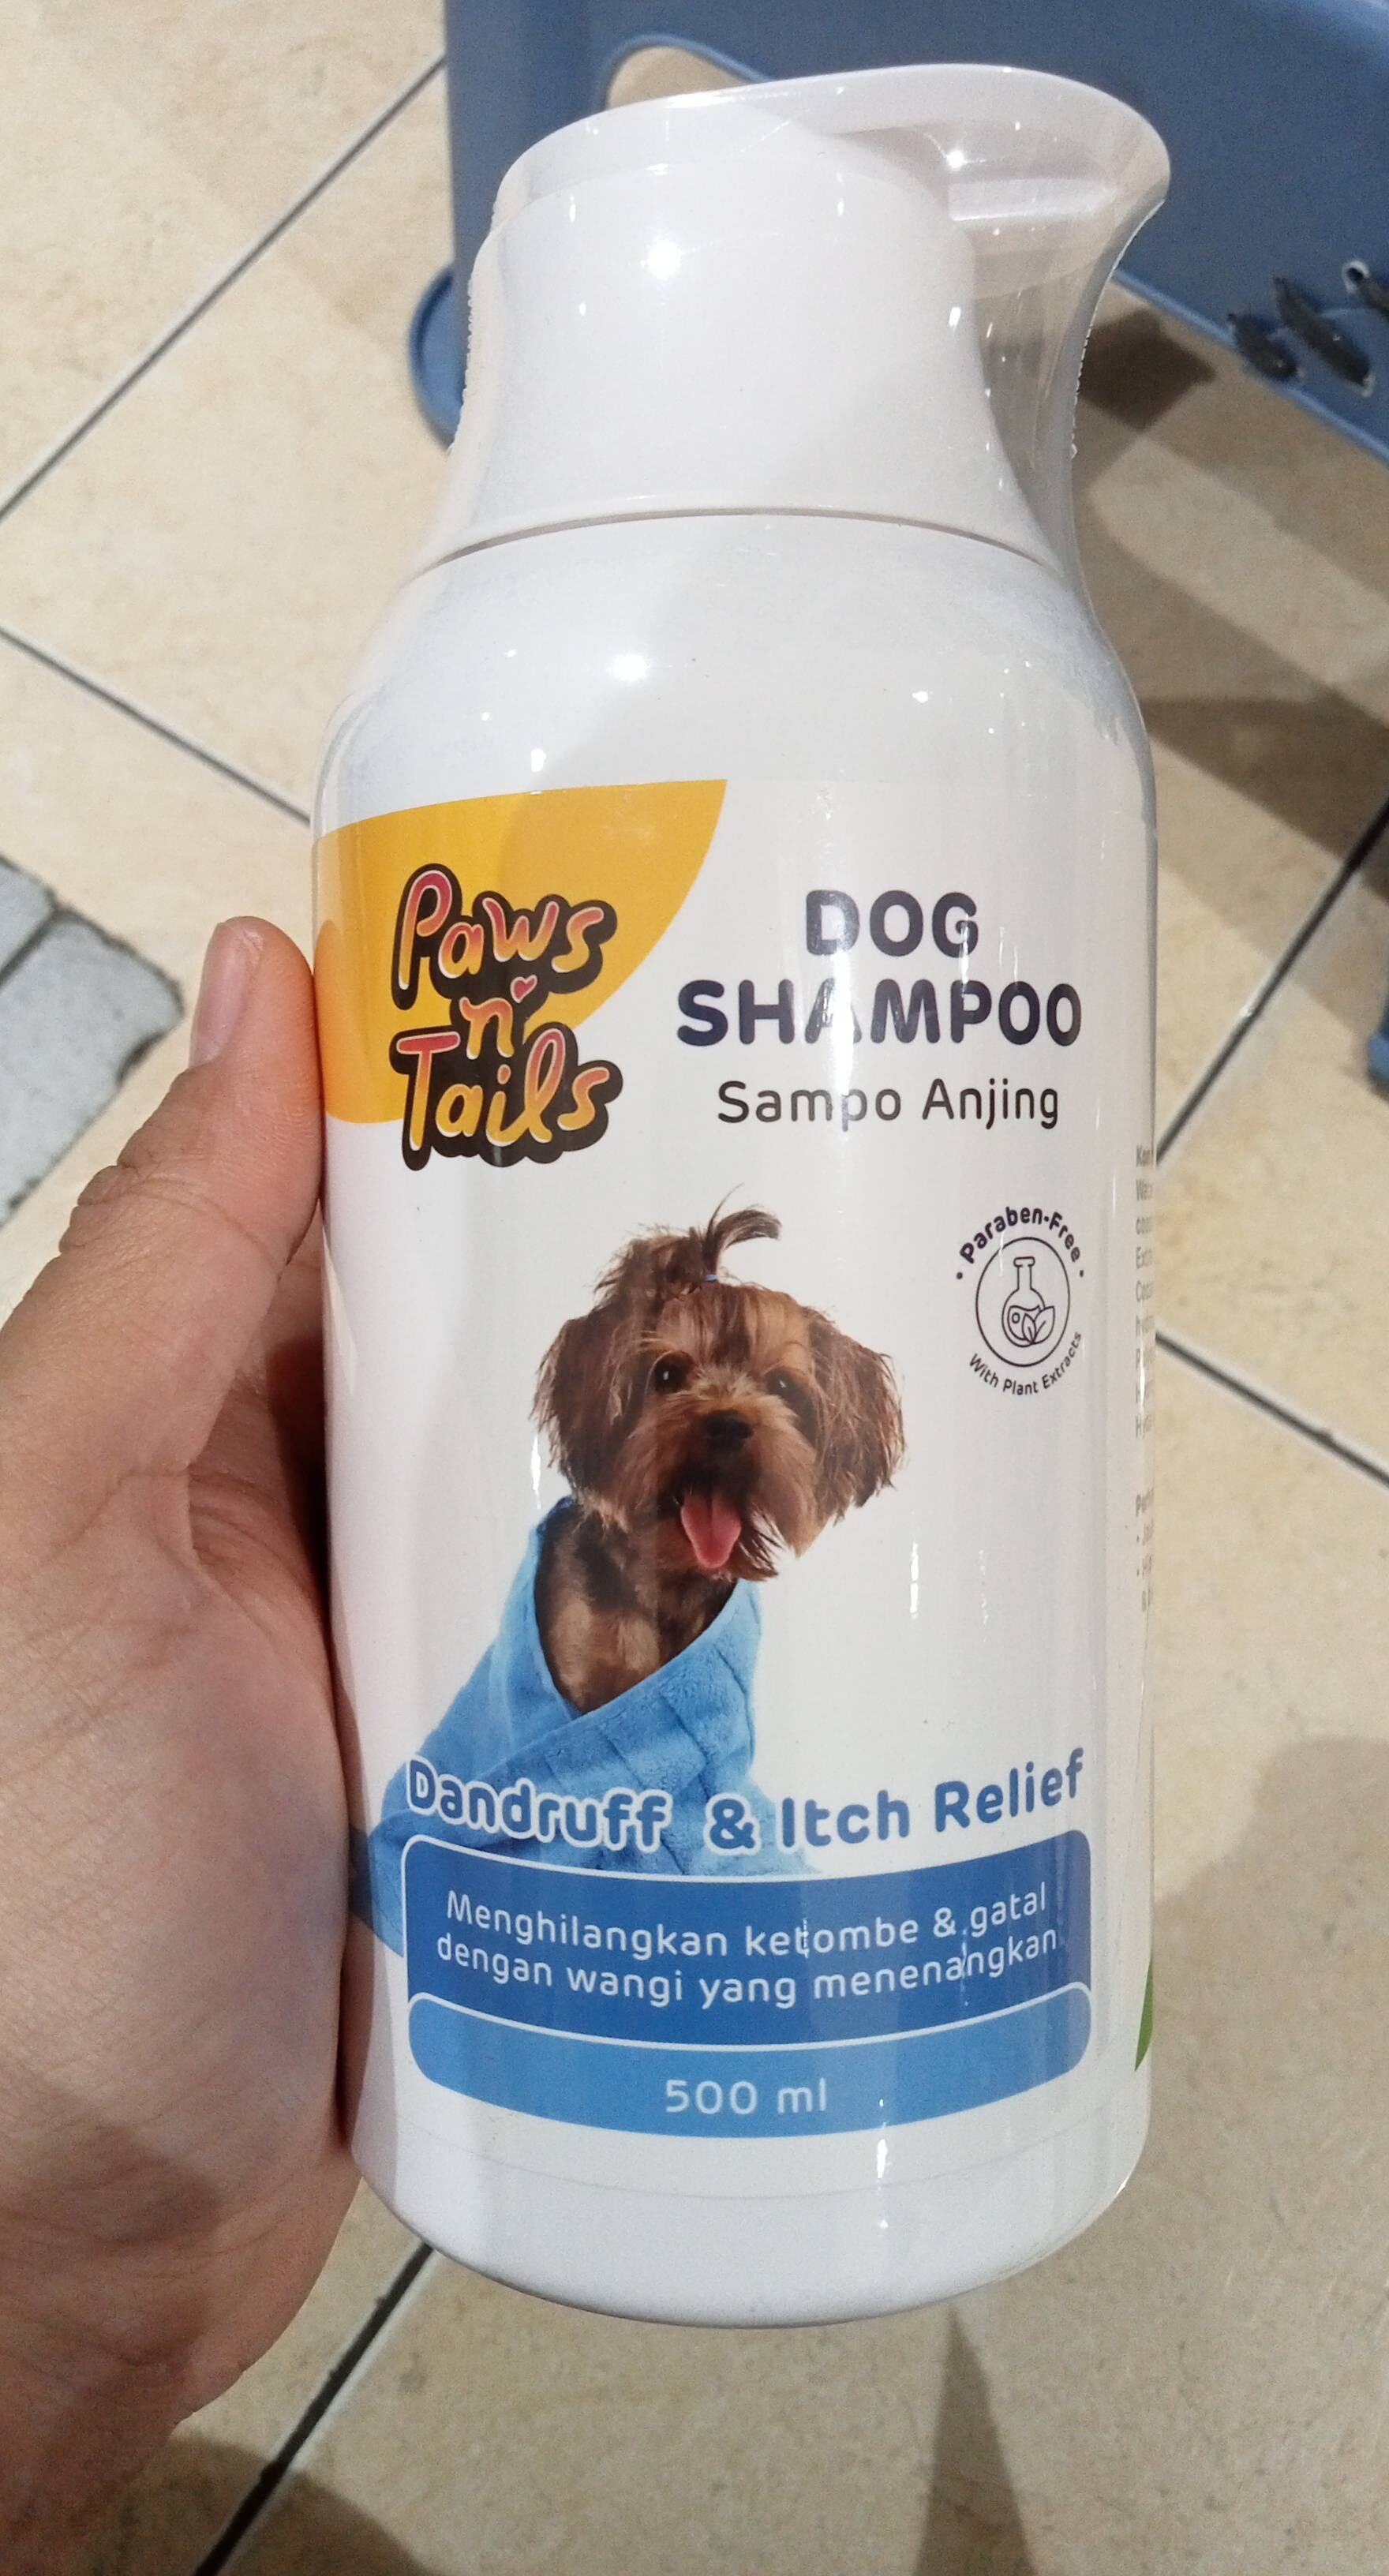 Dog shampoo anti dandruff n itch relief - Produit - en